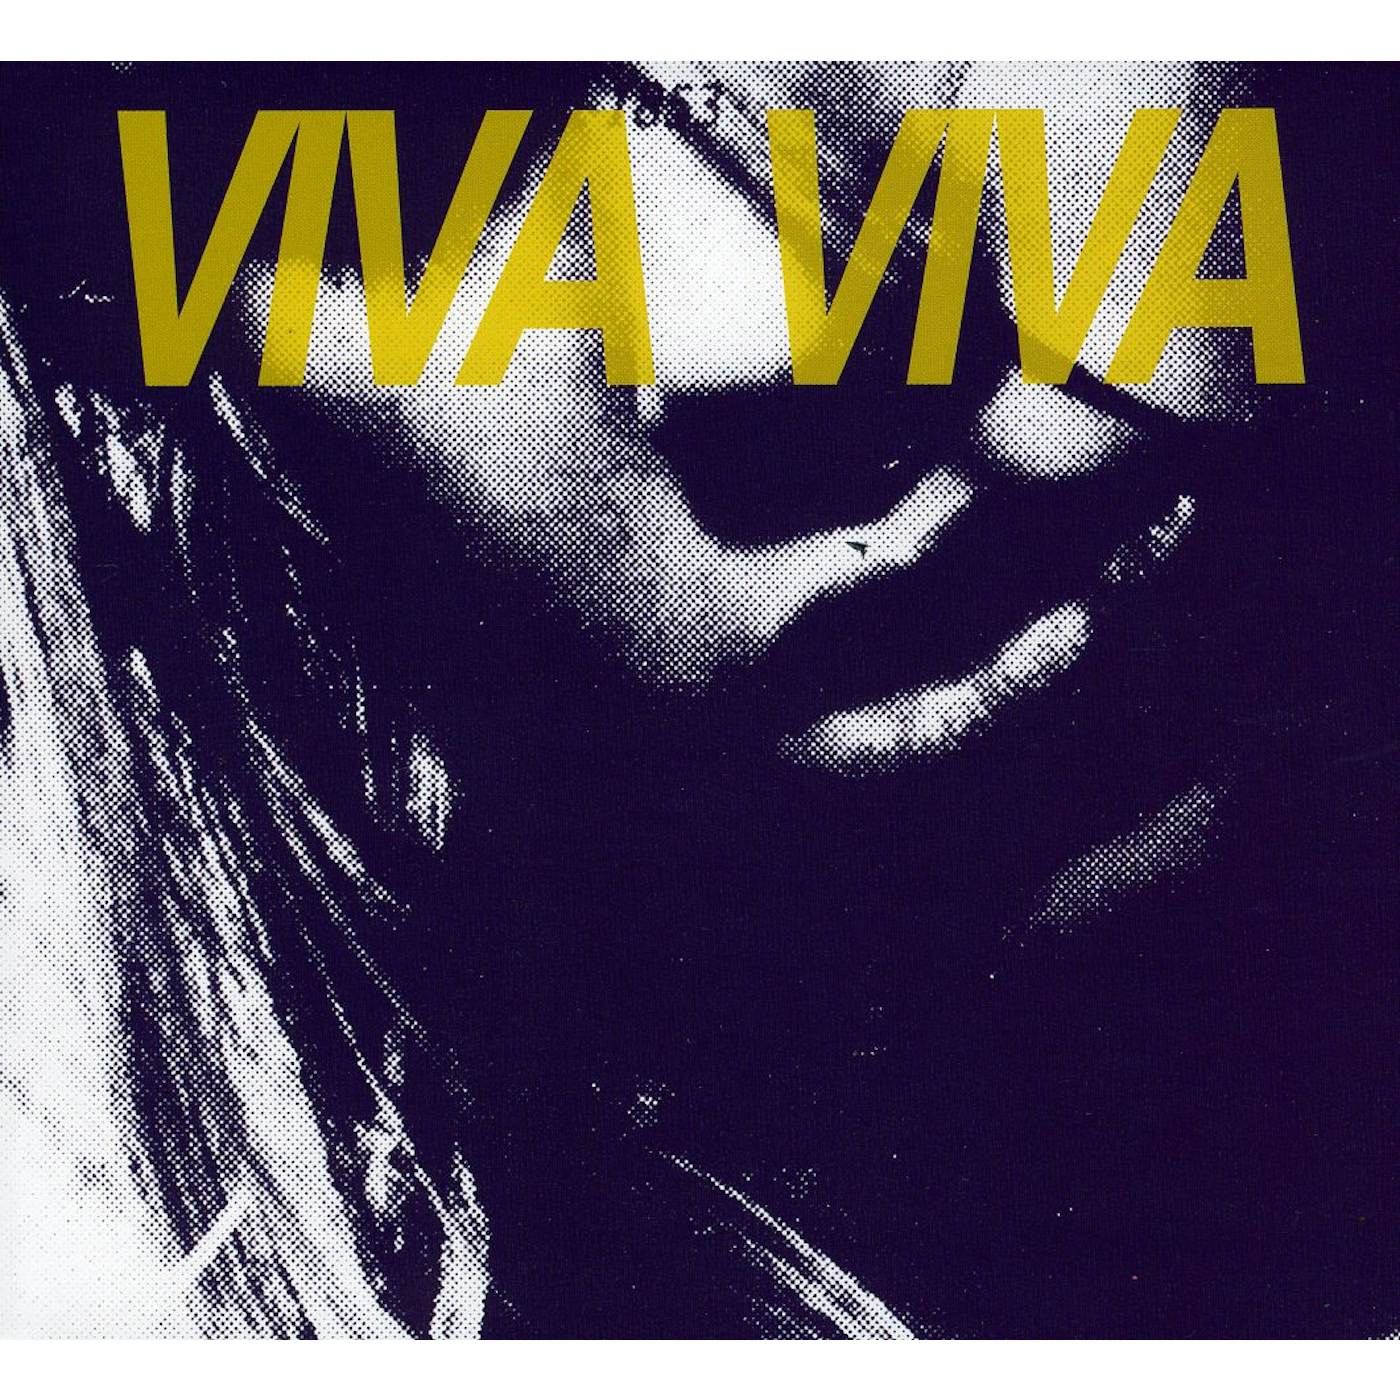 VIVA VIVA CD